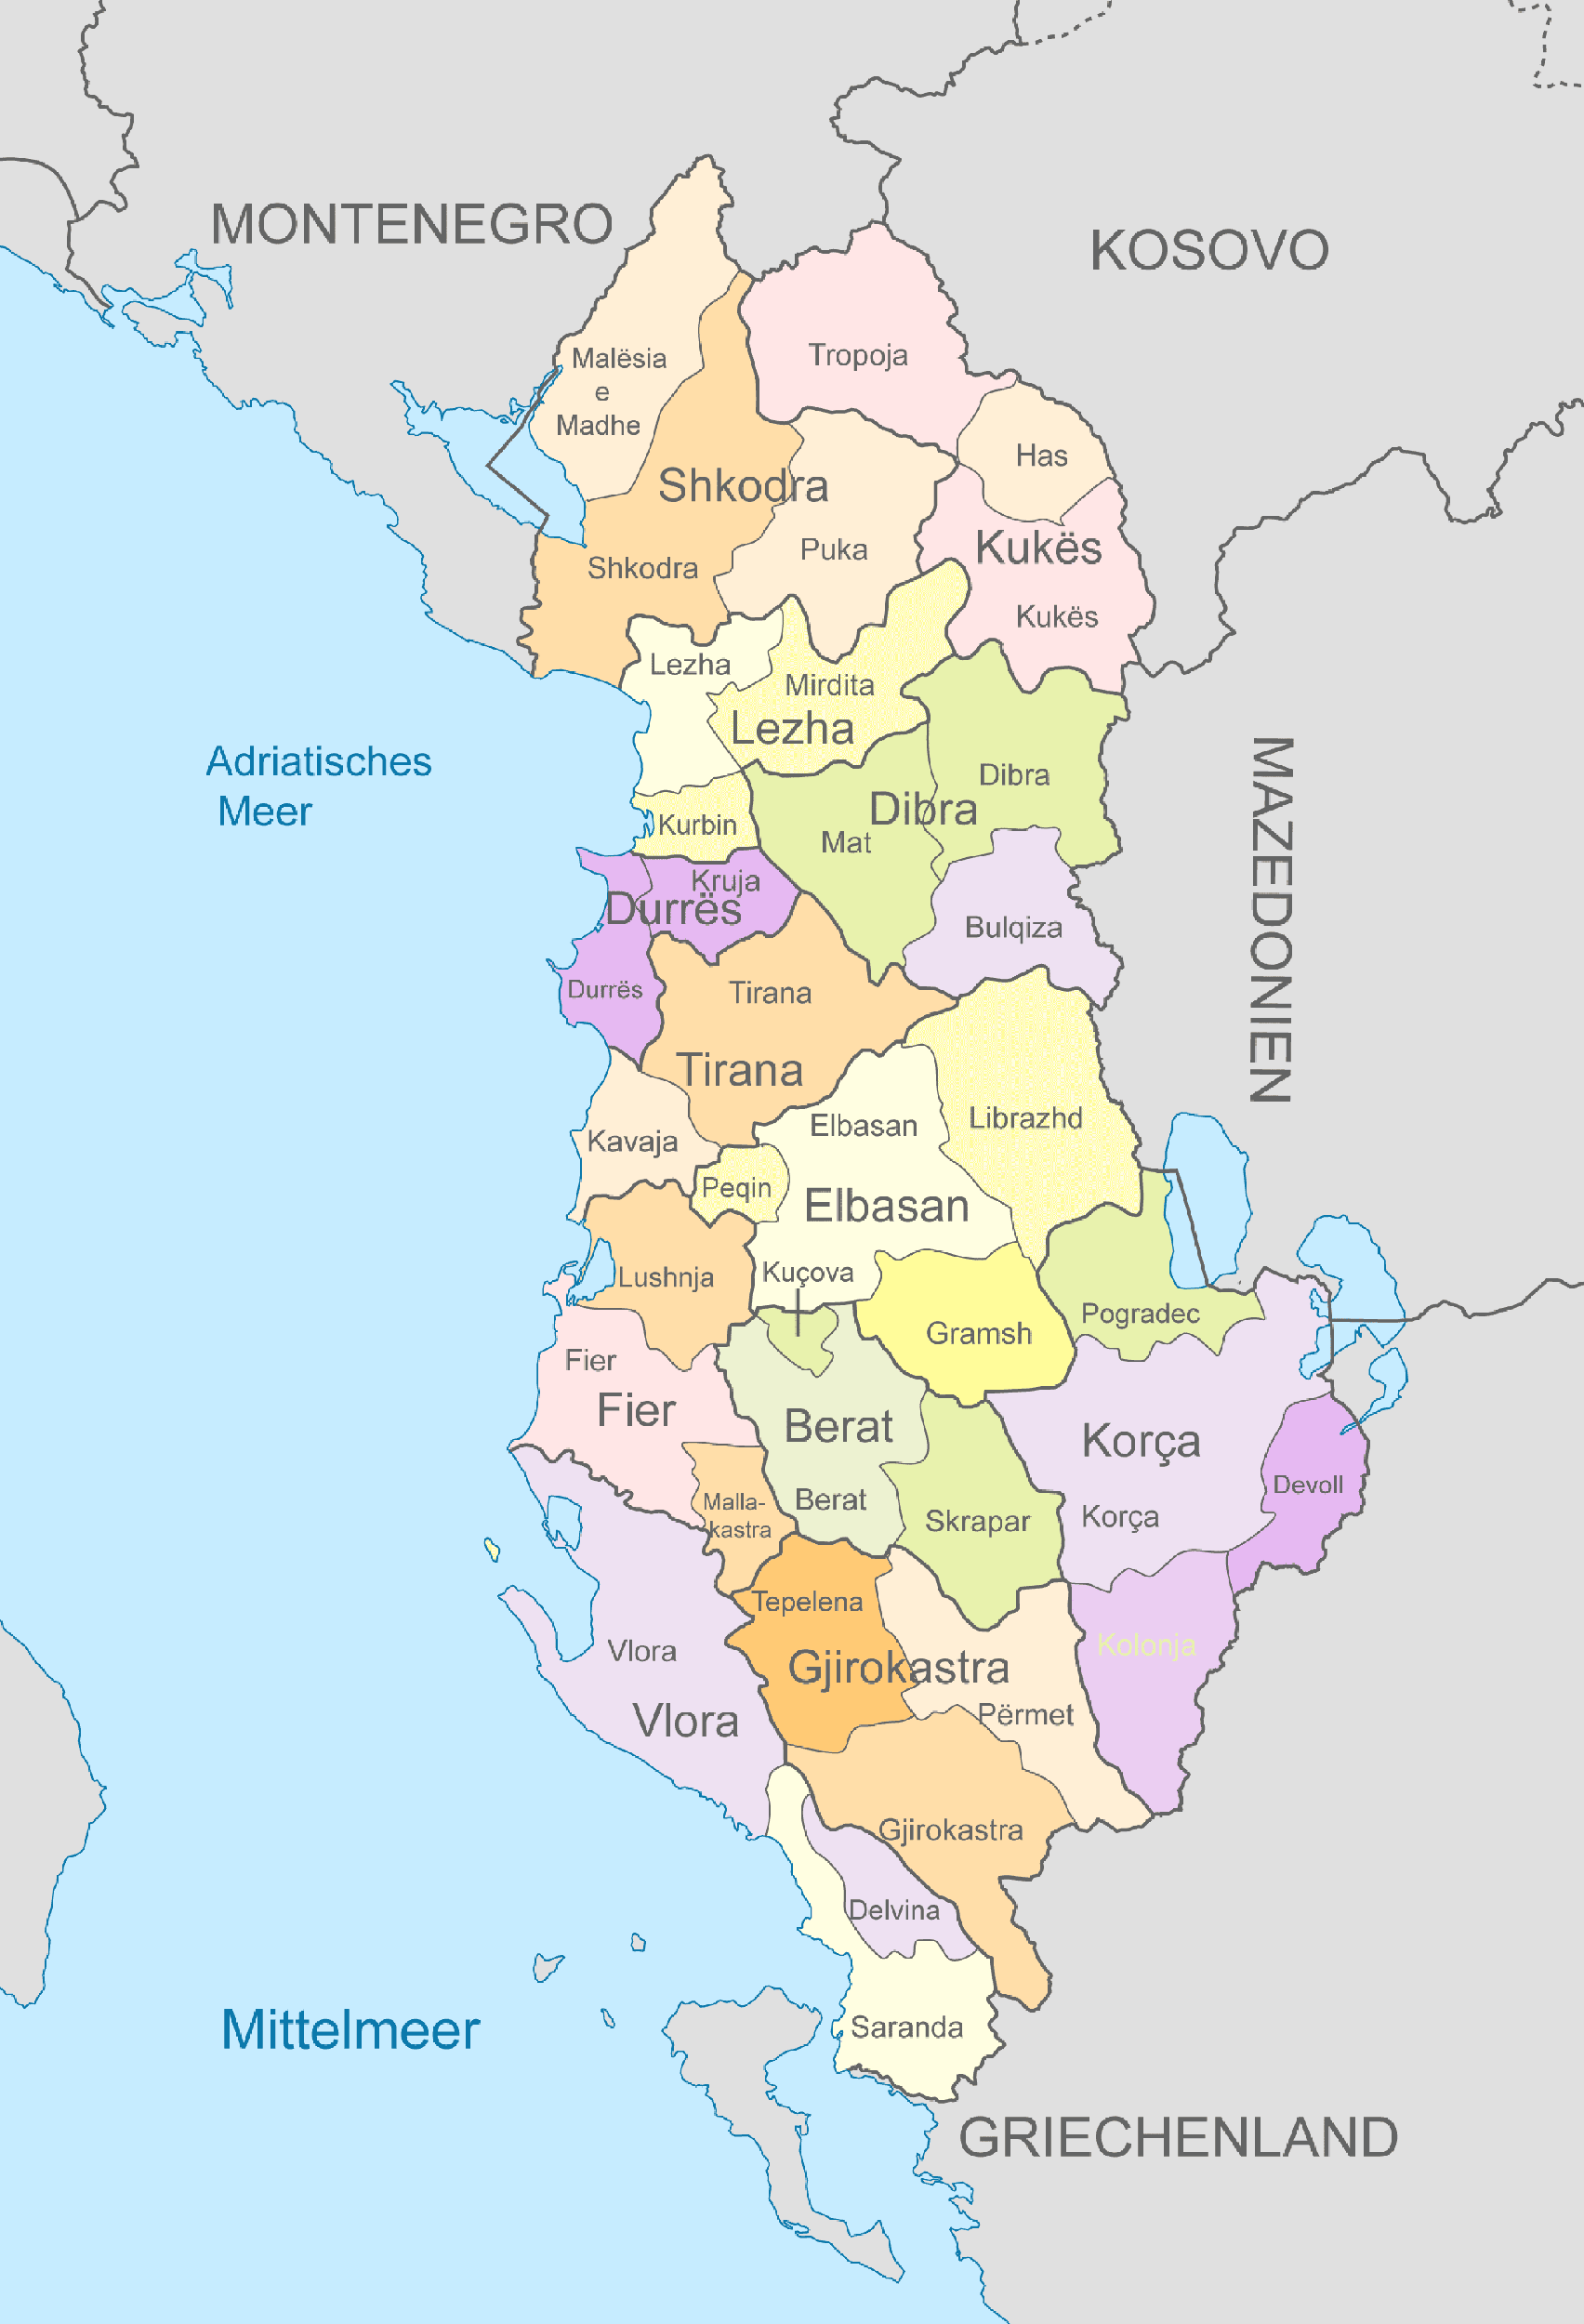 Albanien-Karte mit Nachbarstaaten und farblich markierten Regionen